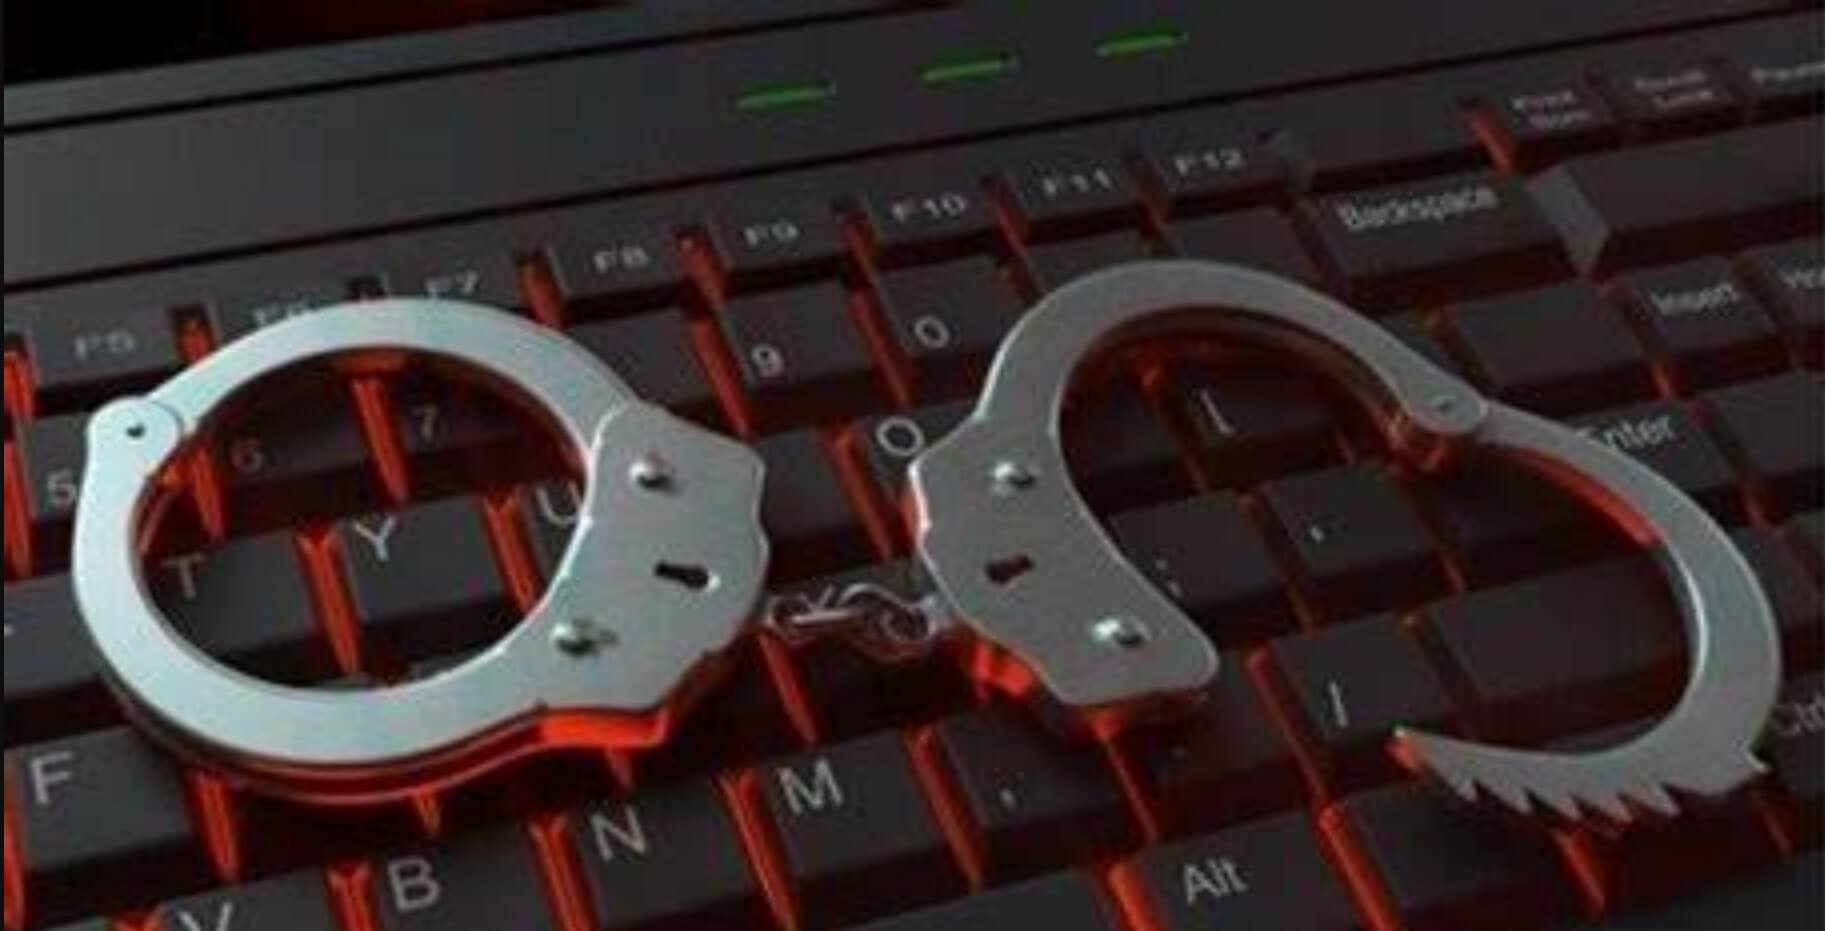 cibercriminalidad en leon- Digital de León